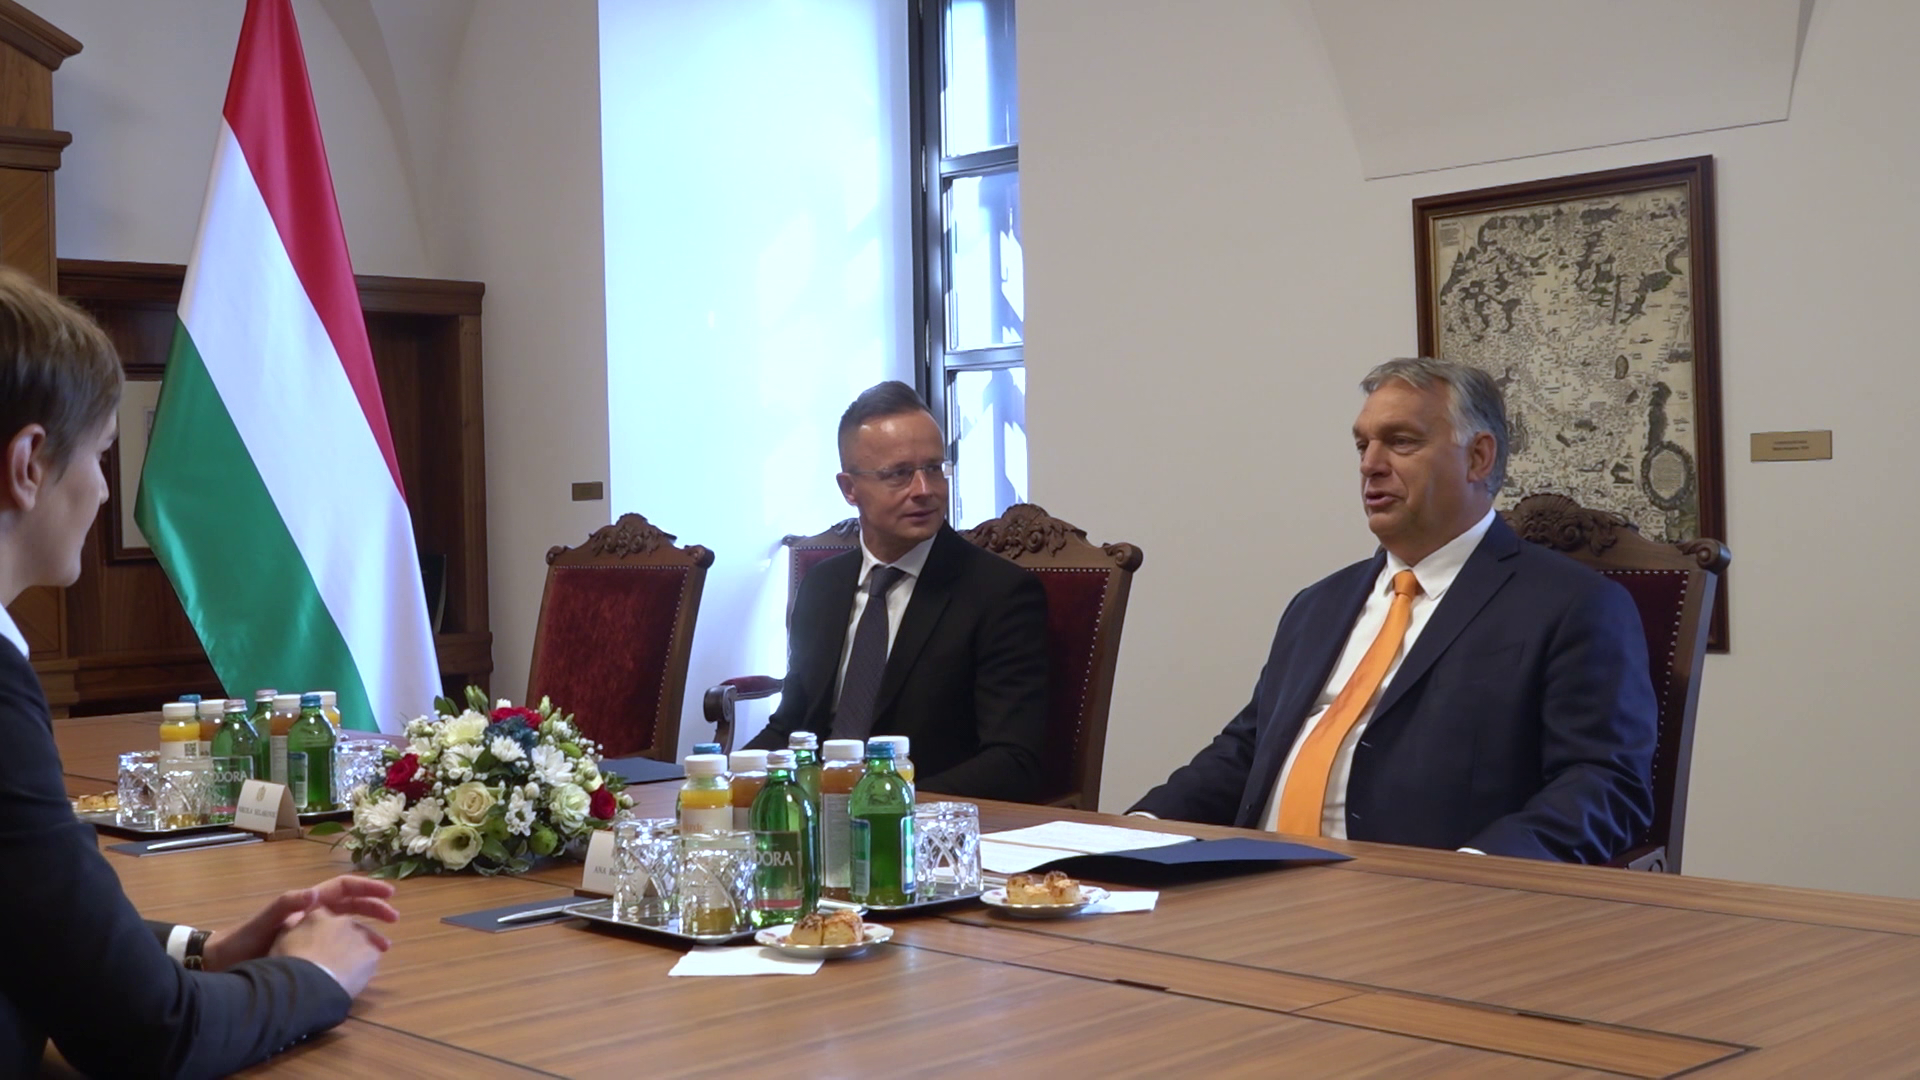 Magyarország és Szerbia egyaránt profitál az együttműködésből